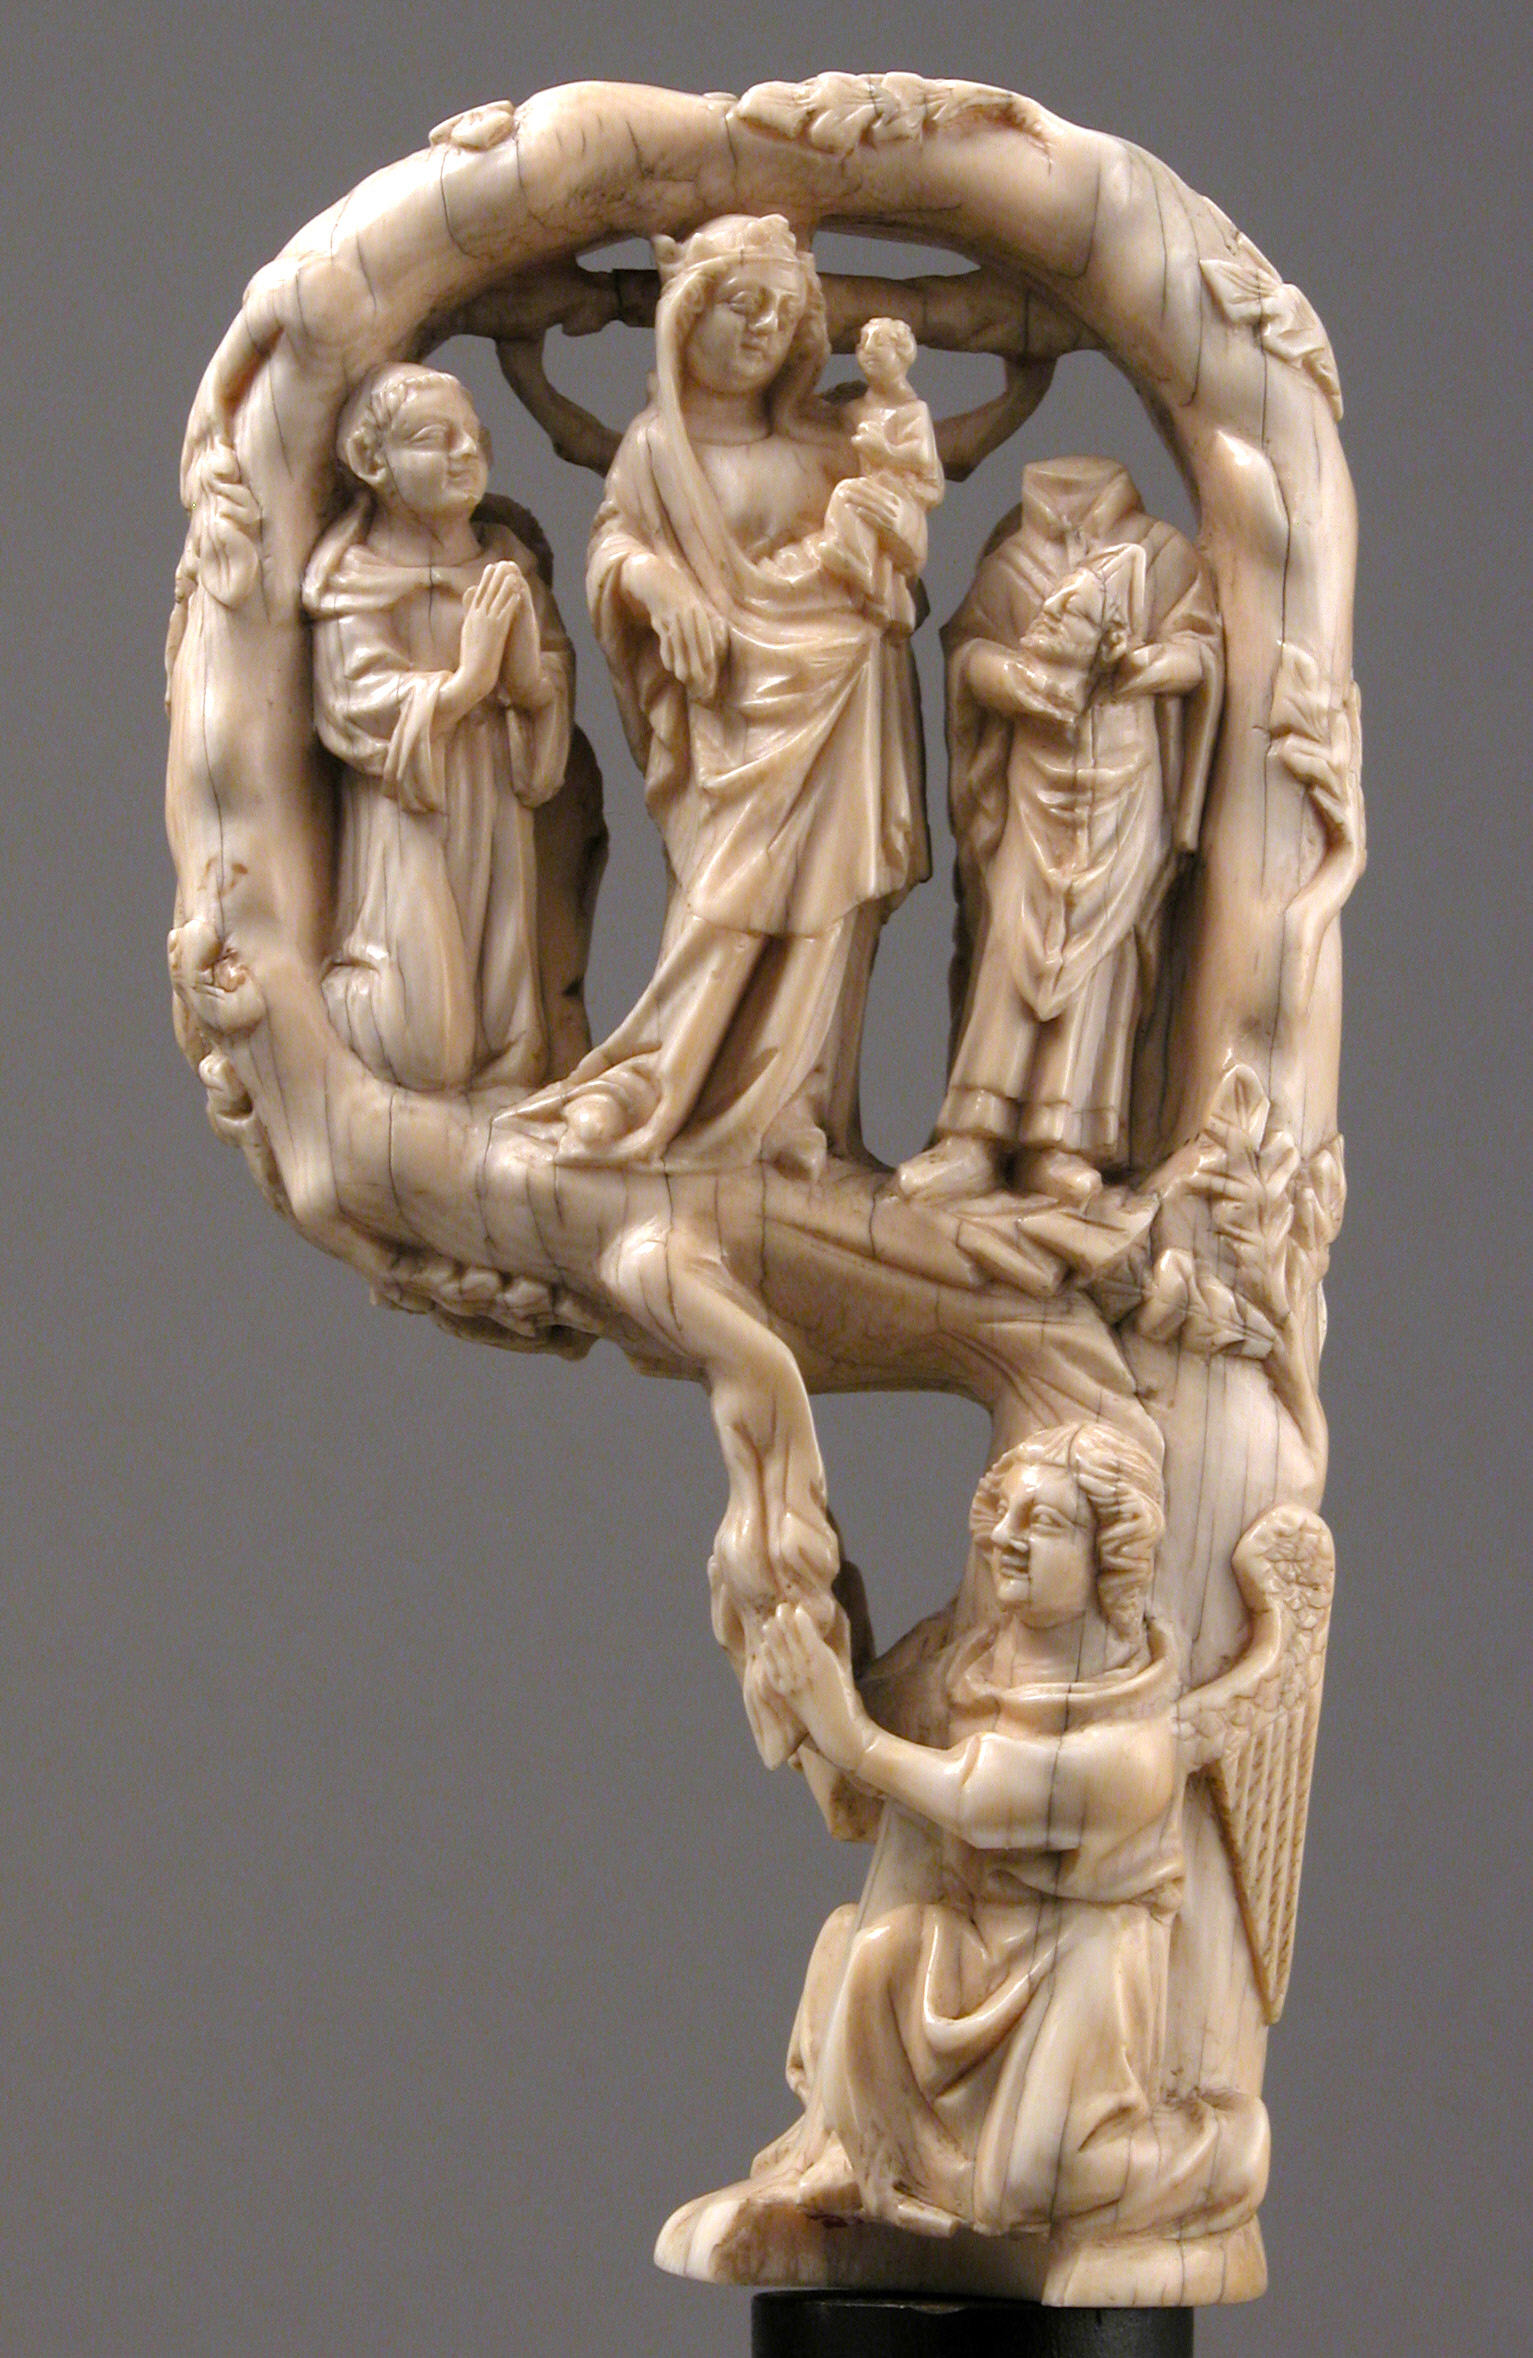 Piskopos Asası Başı: Bakire Meryem ve Bebek İsa by Bilinmeyen Sanatçı - 1350 - 14.8 x 8 x 3.8 cm 